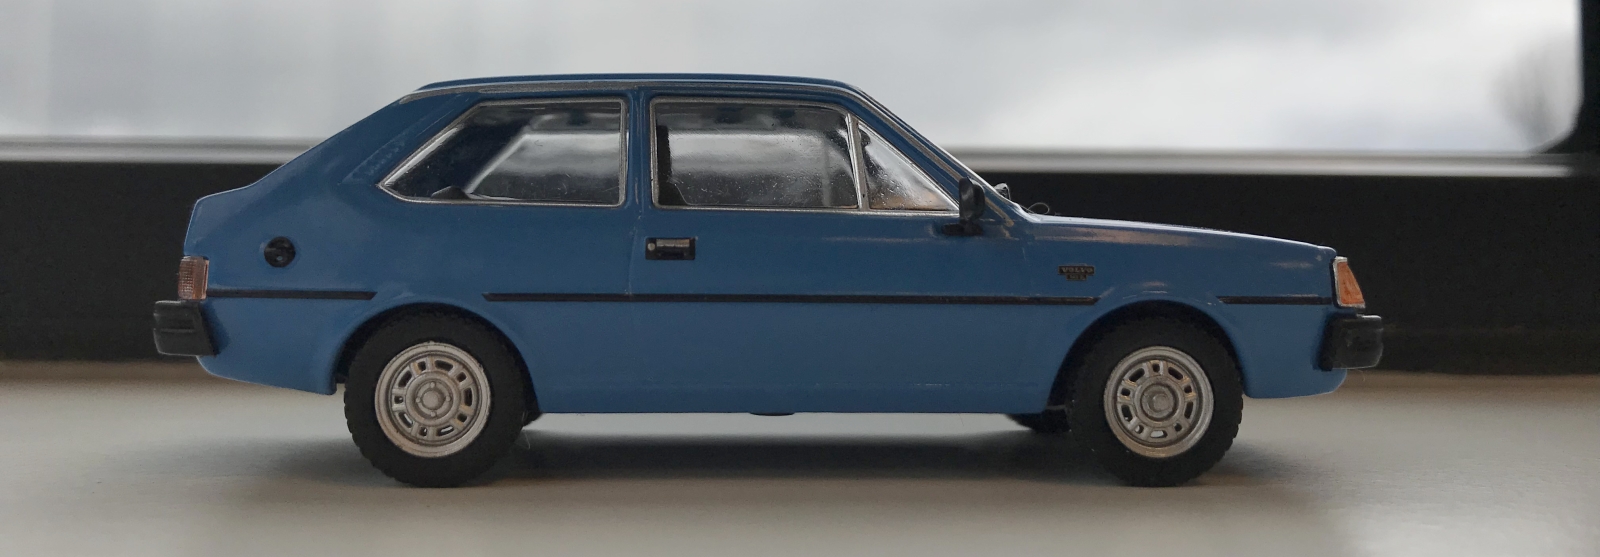 Volvo 343 - AutoRAI in Miniatuur